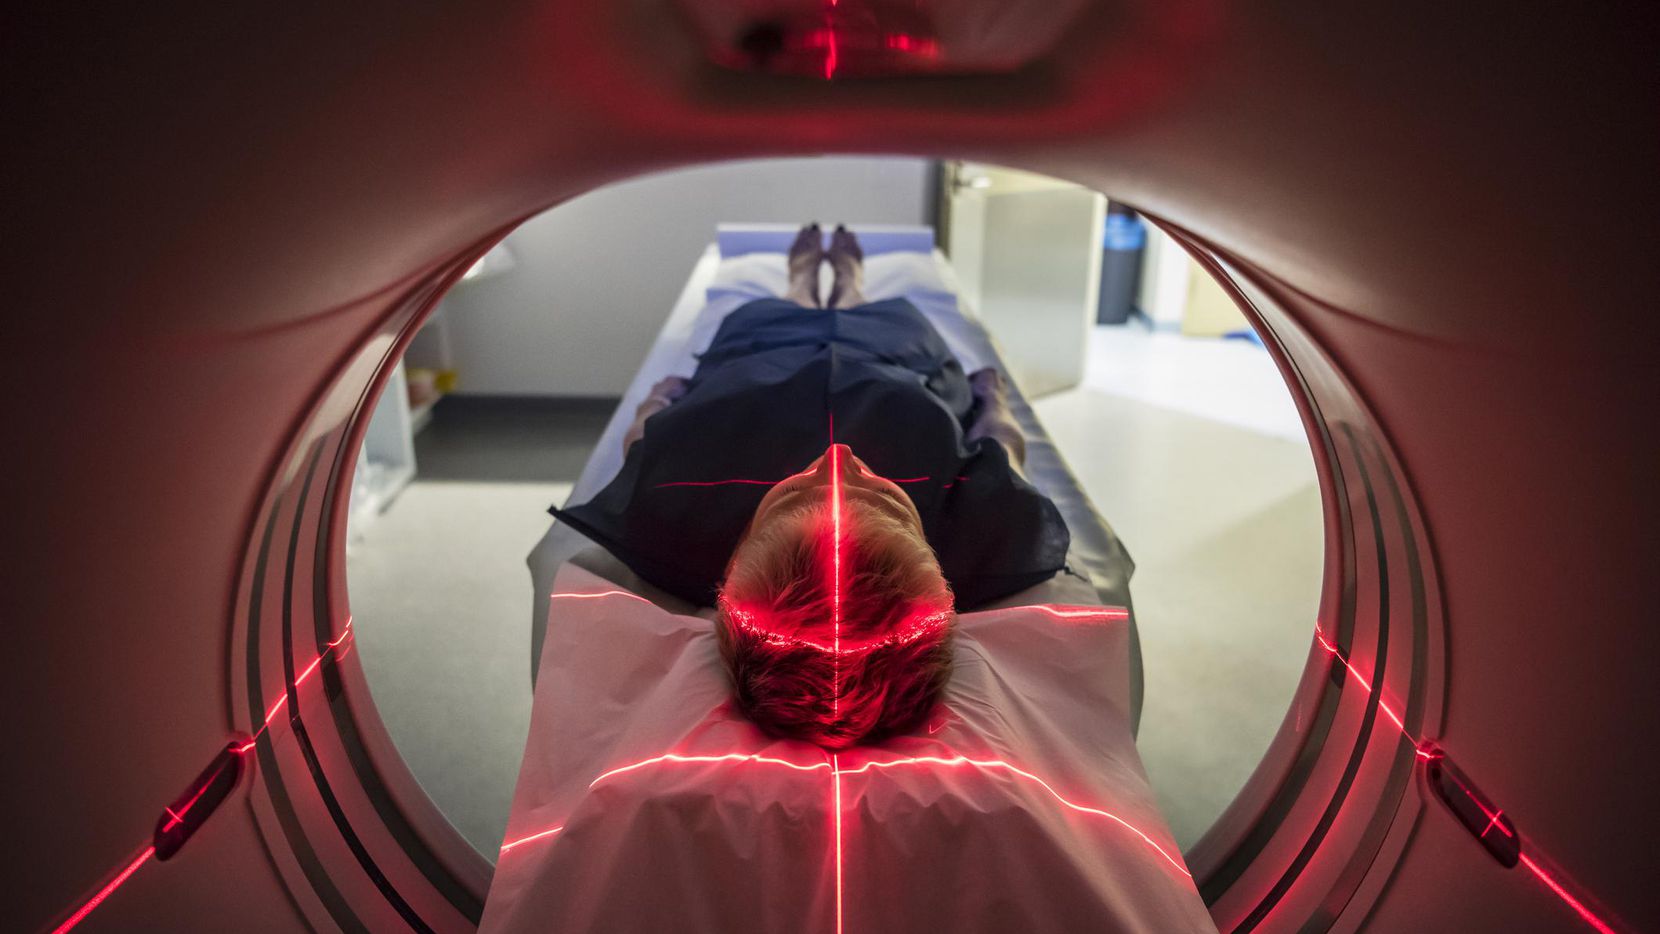 Una tomografía sirve para identificar un posible infarto cerebral. (GETTY IMAGES/iSTOCK)
